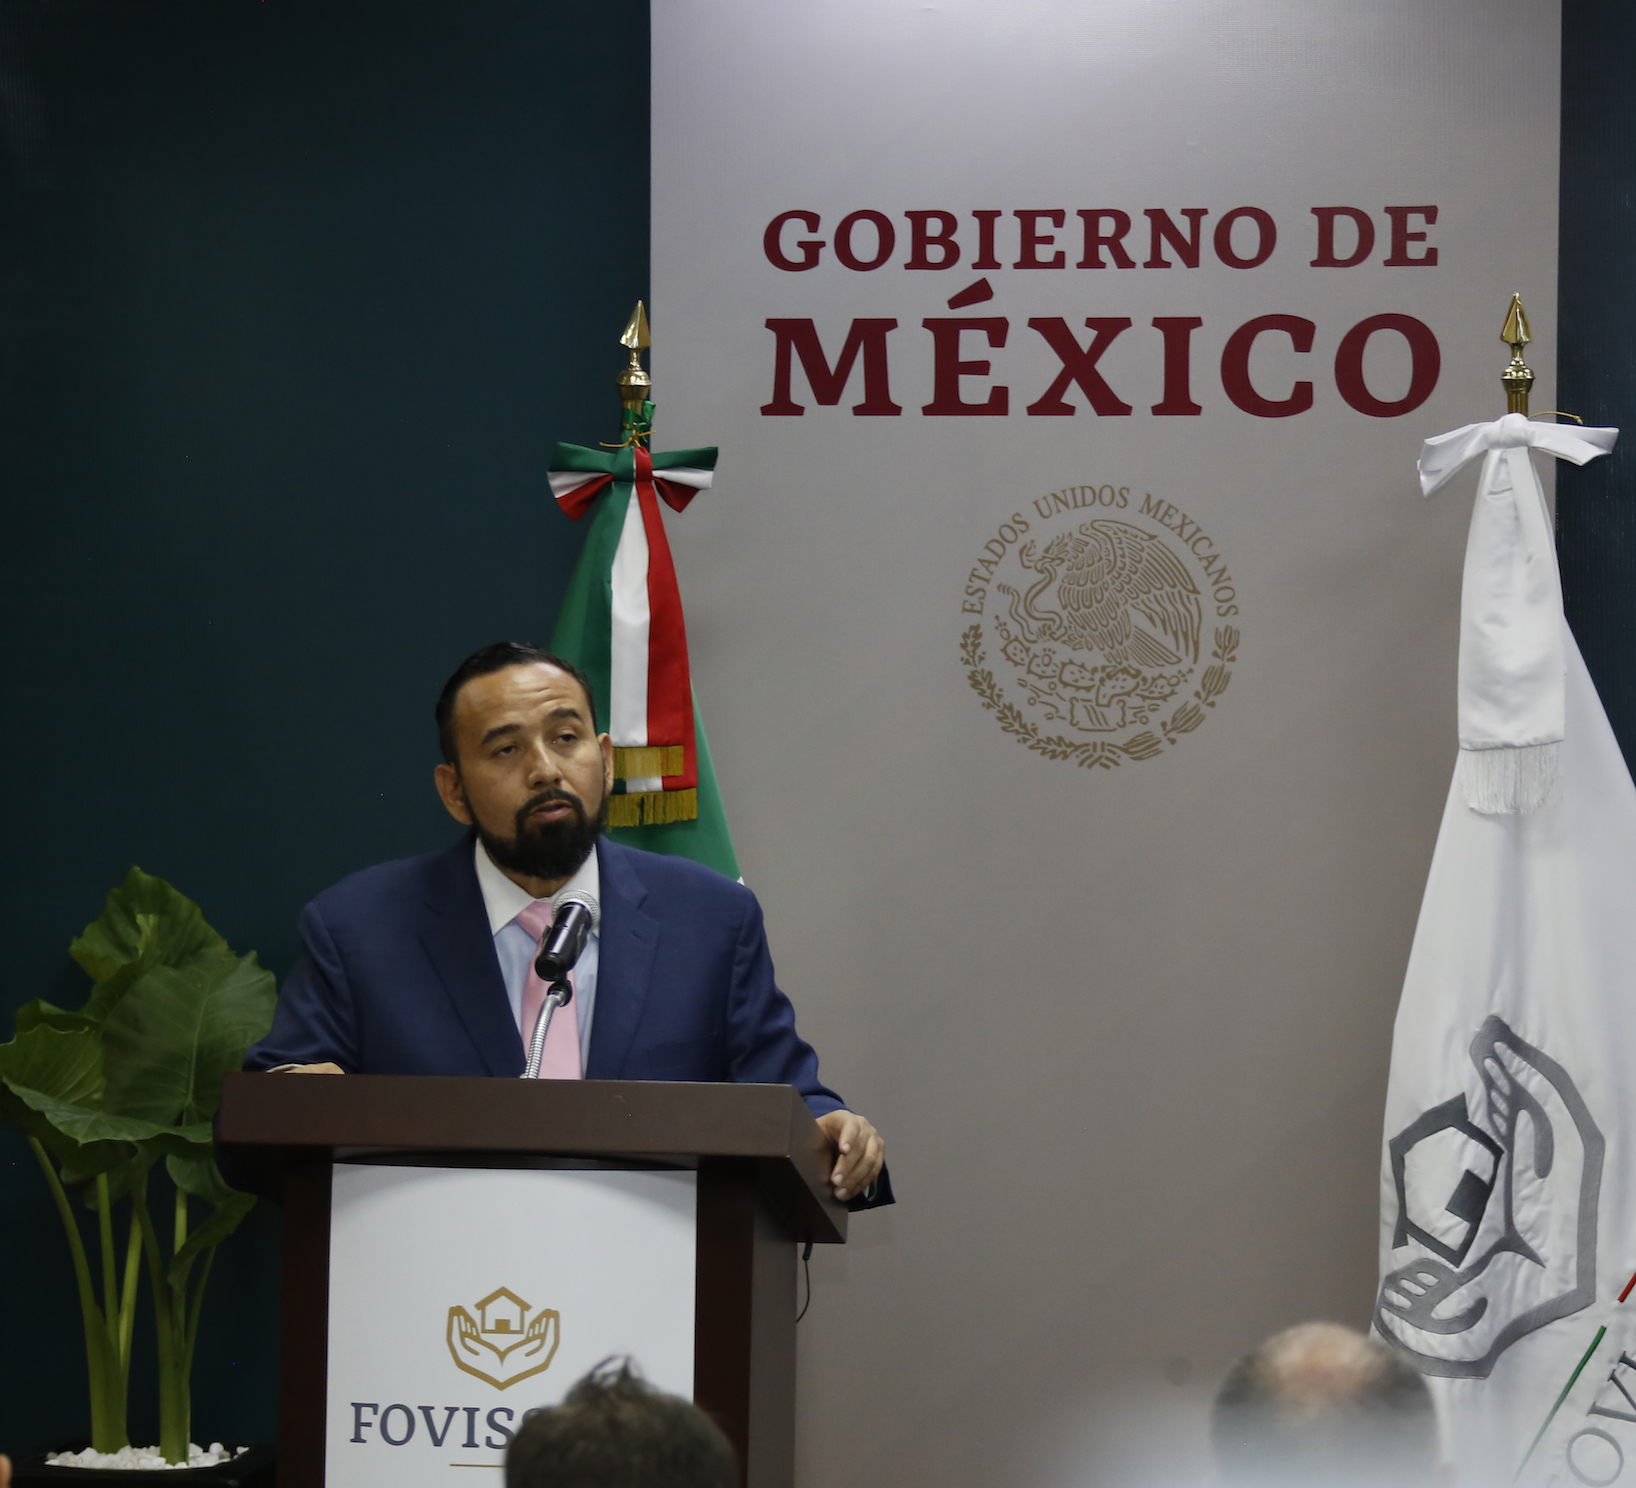 El Fovissste es la institución de solidaridad, servicio y seguridad social del Estado Mexicano, dijo Agustín Rodríguez López, Vocal del Fovissste